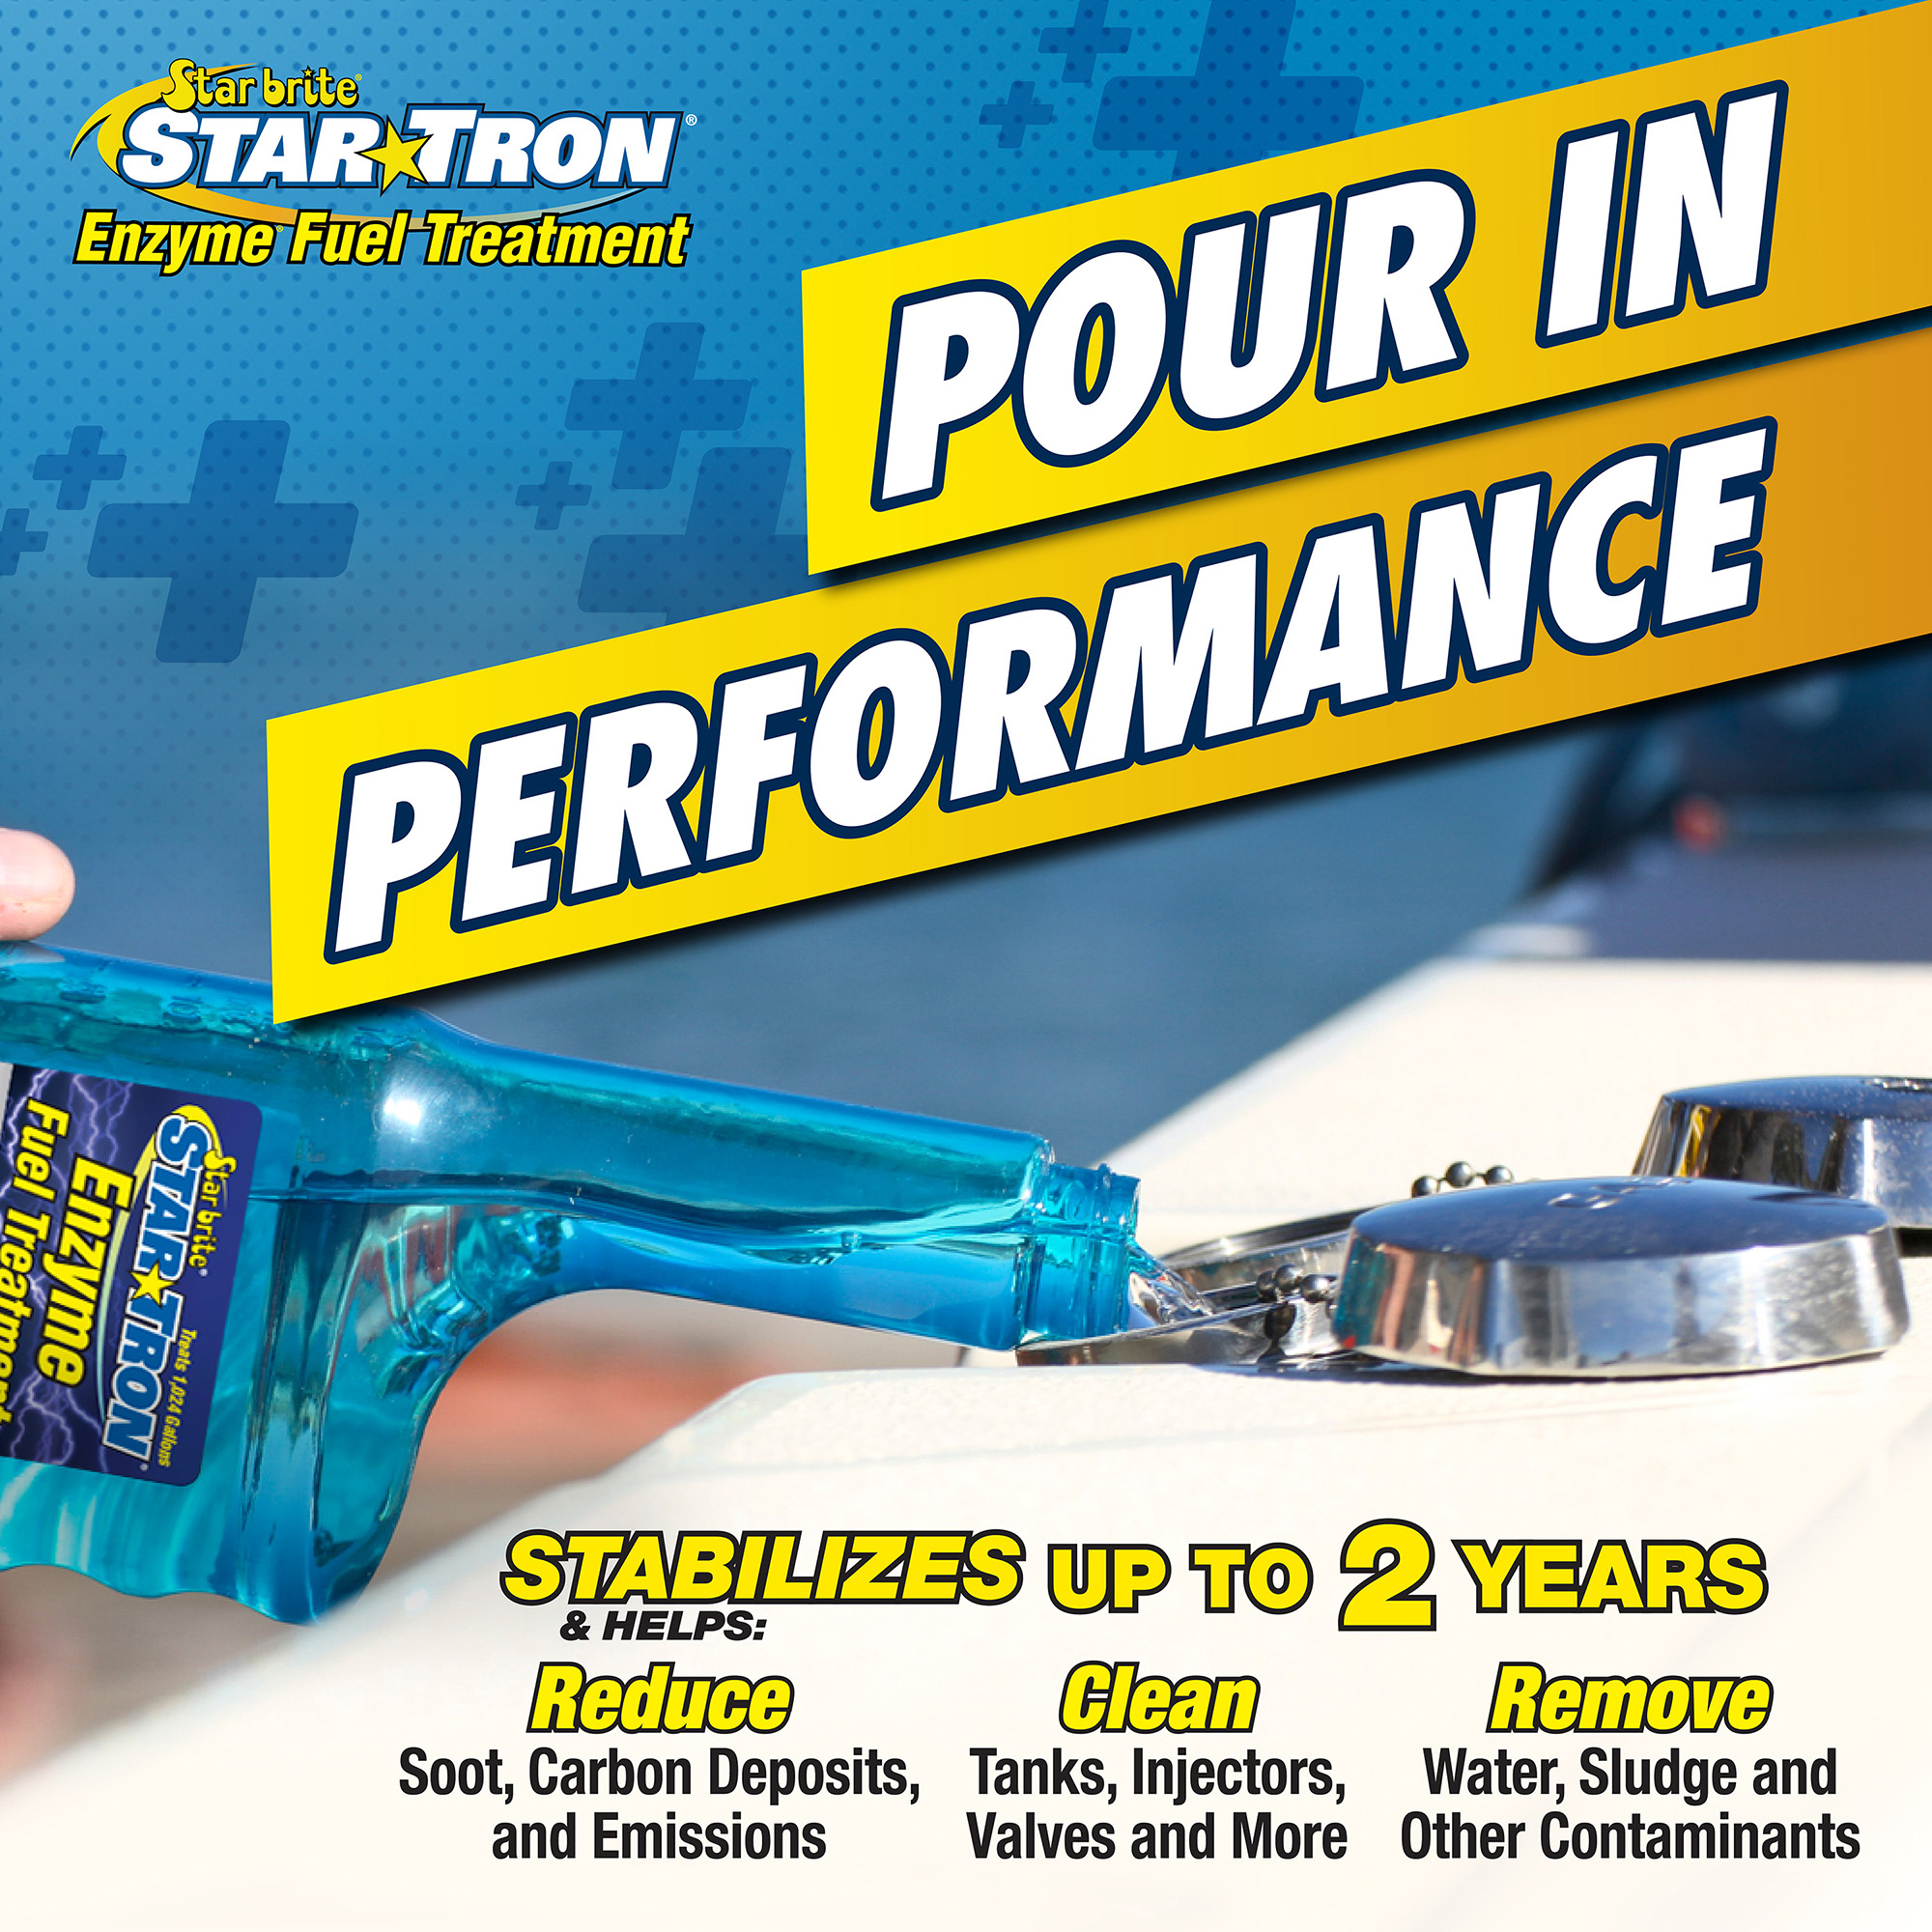 Starbrite Star Tron Dieselzusatz 30 ml – Bodenseenautik